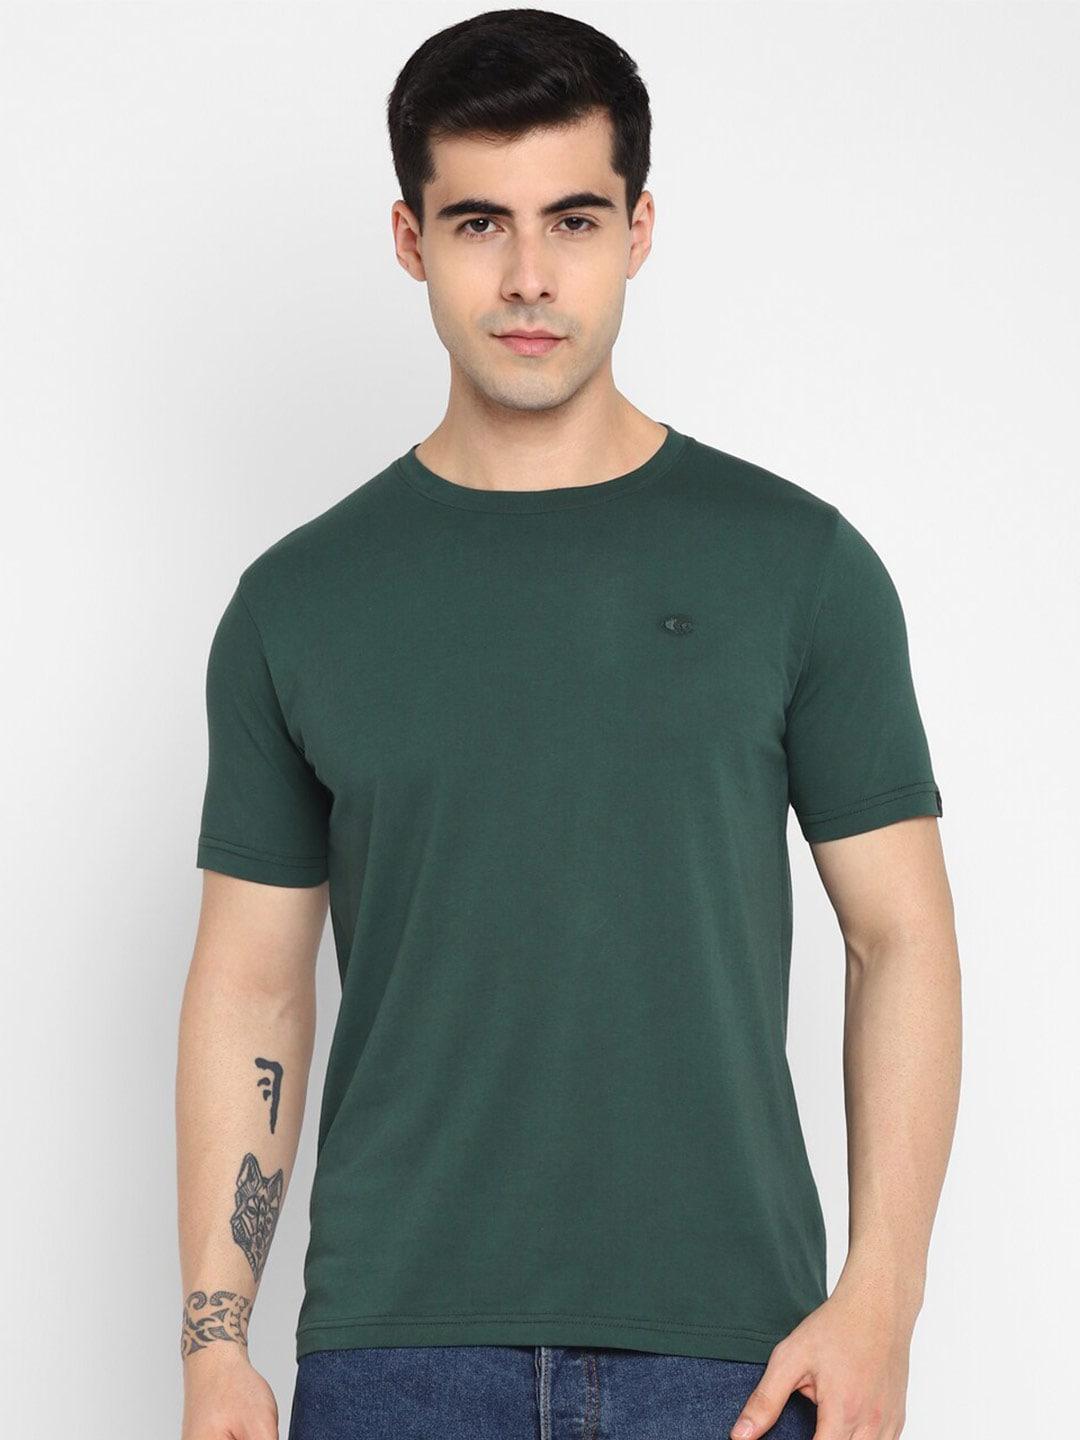 allen-cooper-round-neck-cotton-t-shirt